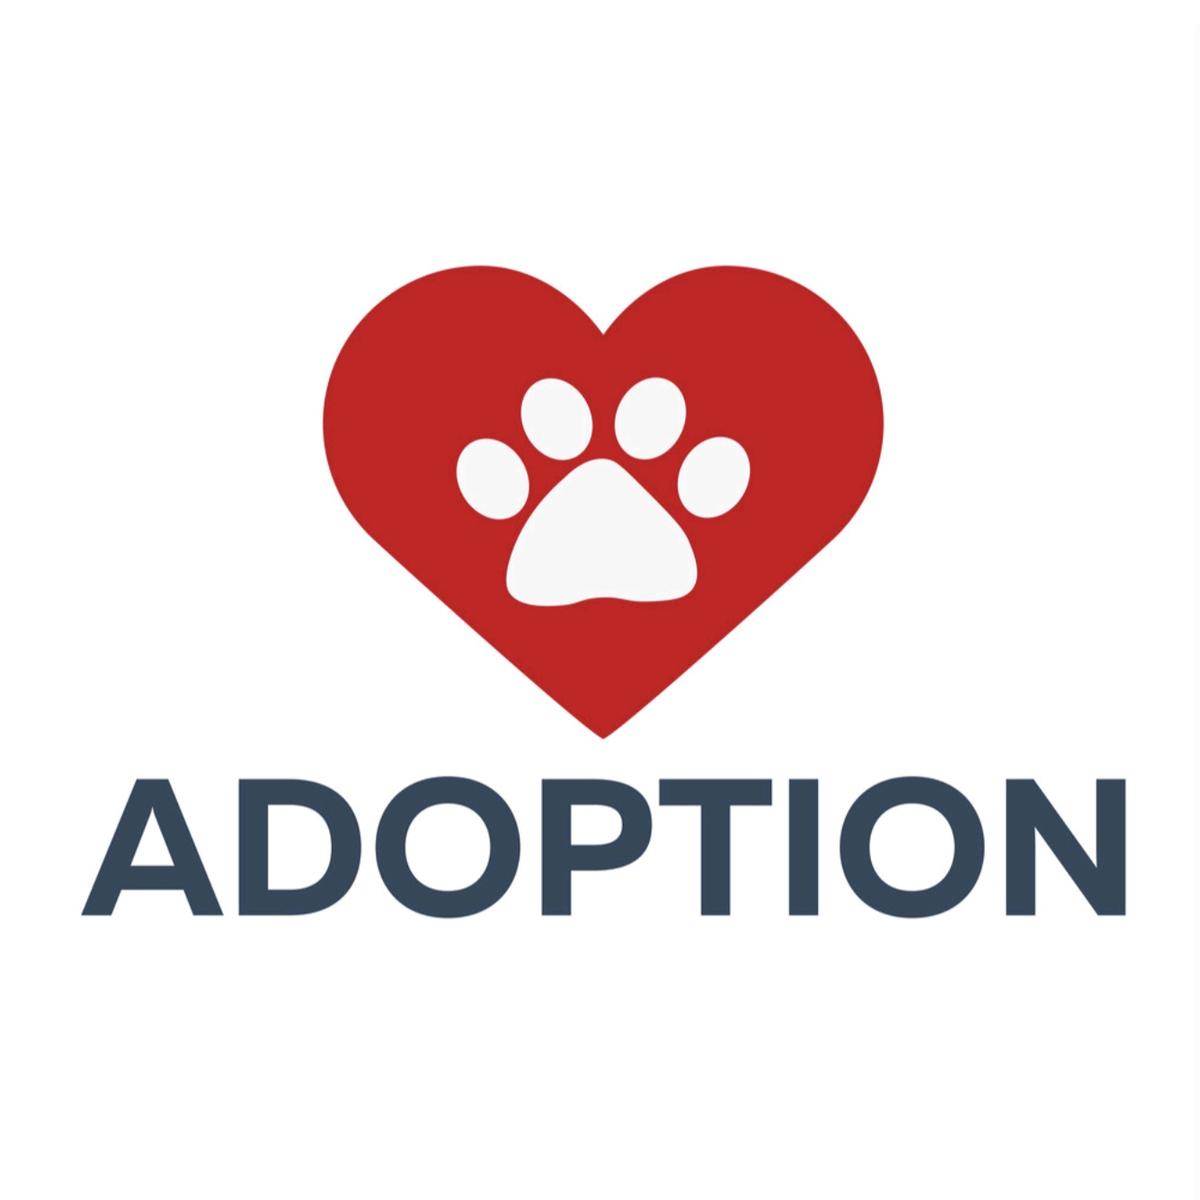 Pets Adoption's images